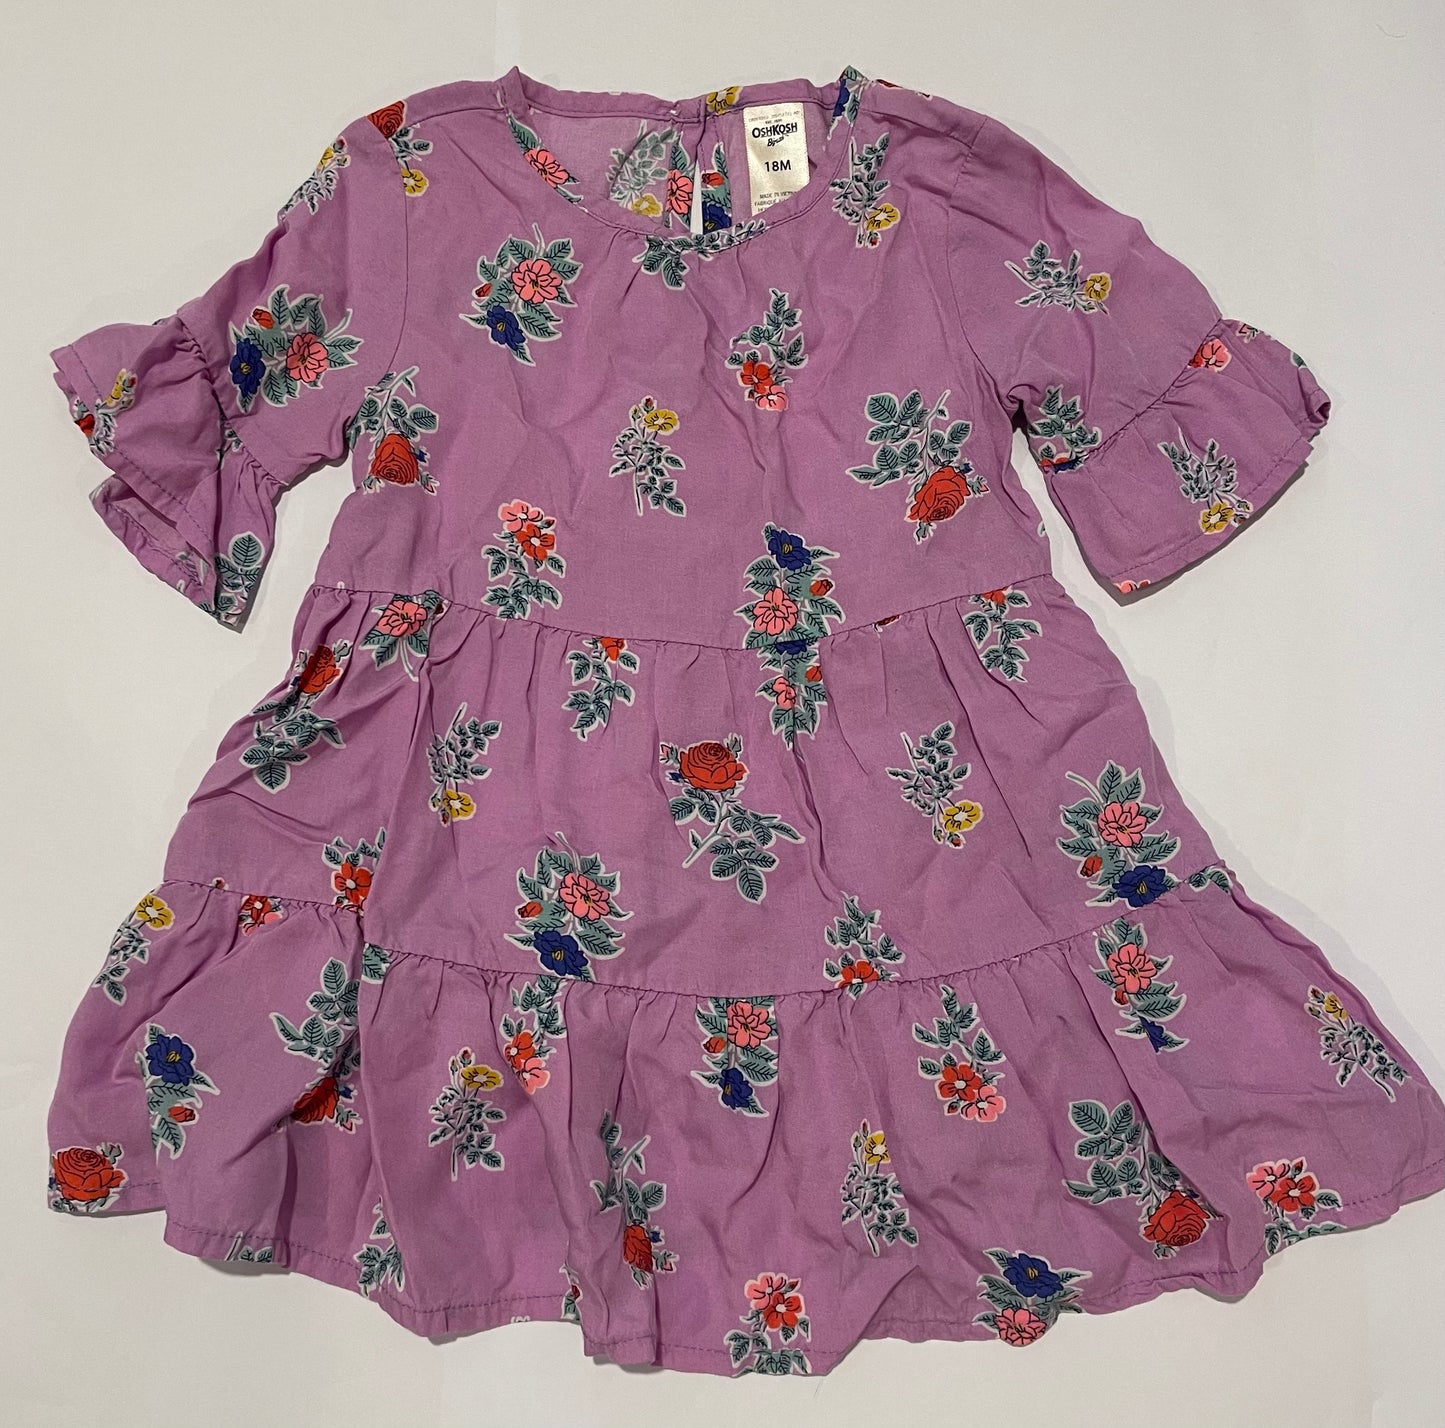 Oshkosh Girls 18M Purple Dress (18-24 months) EUC